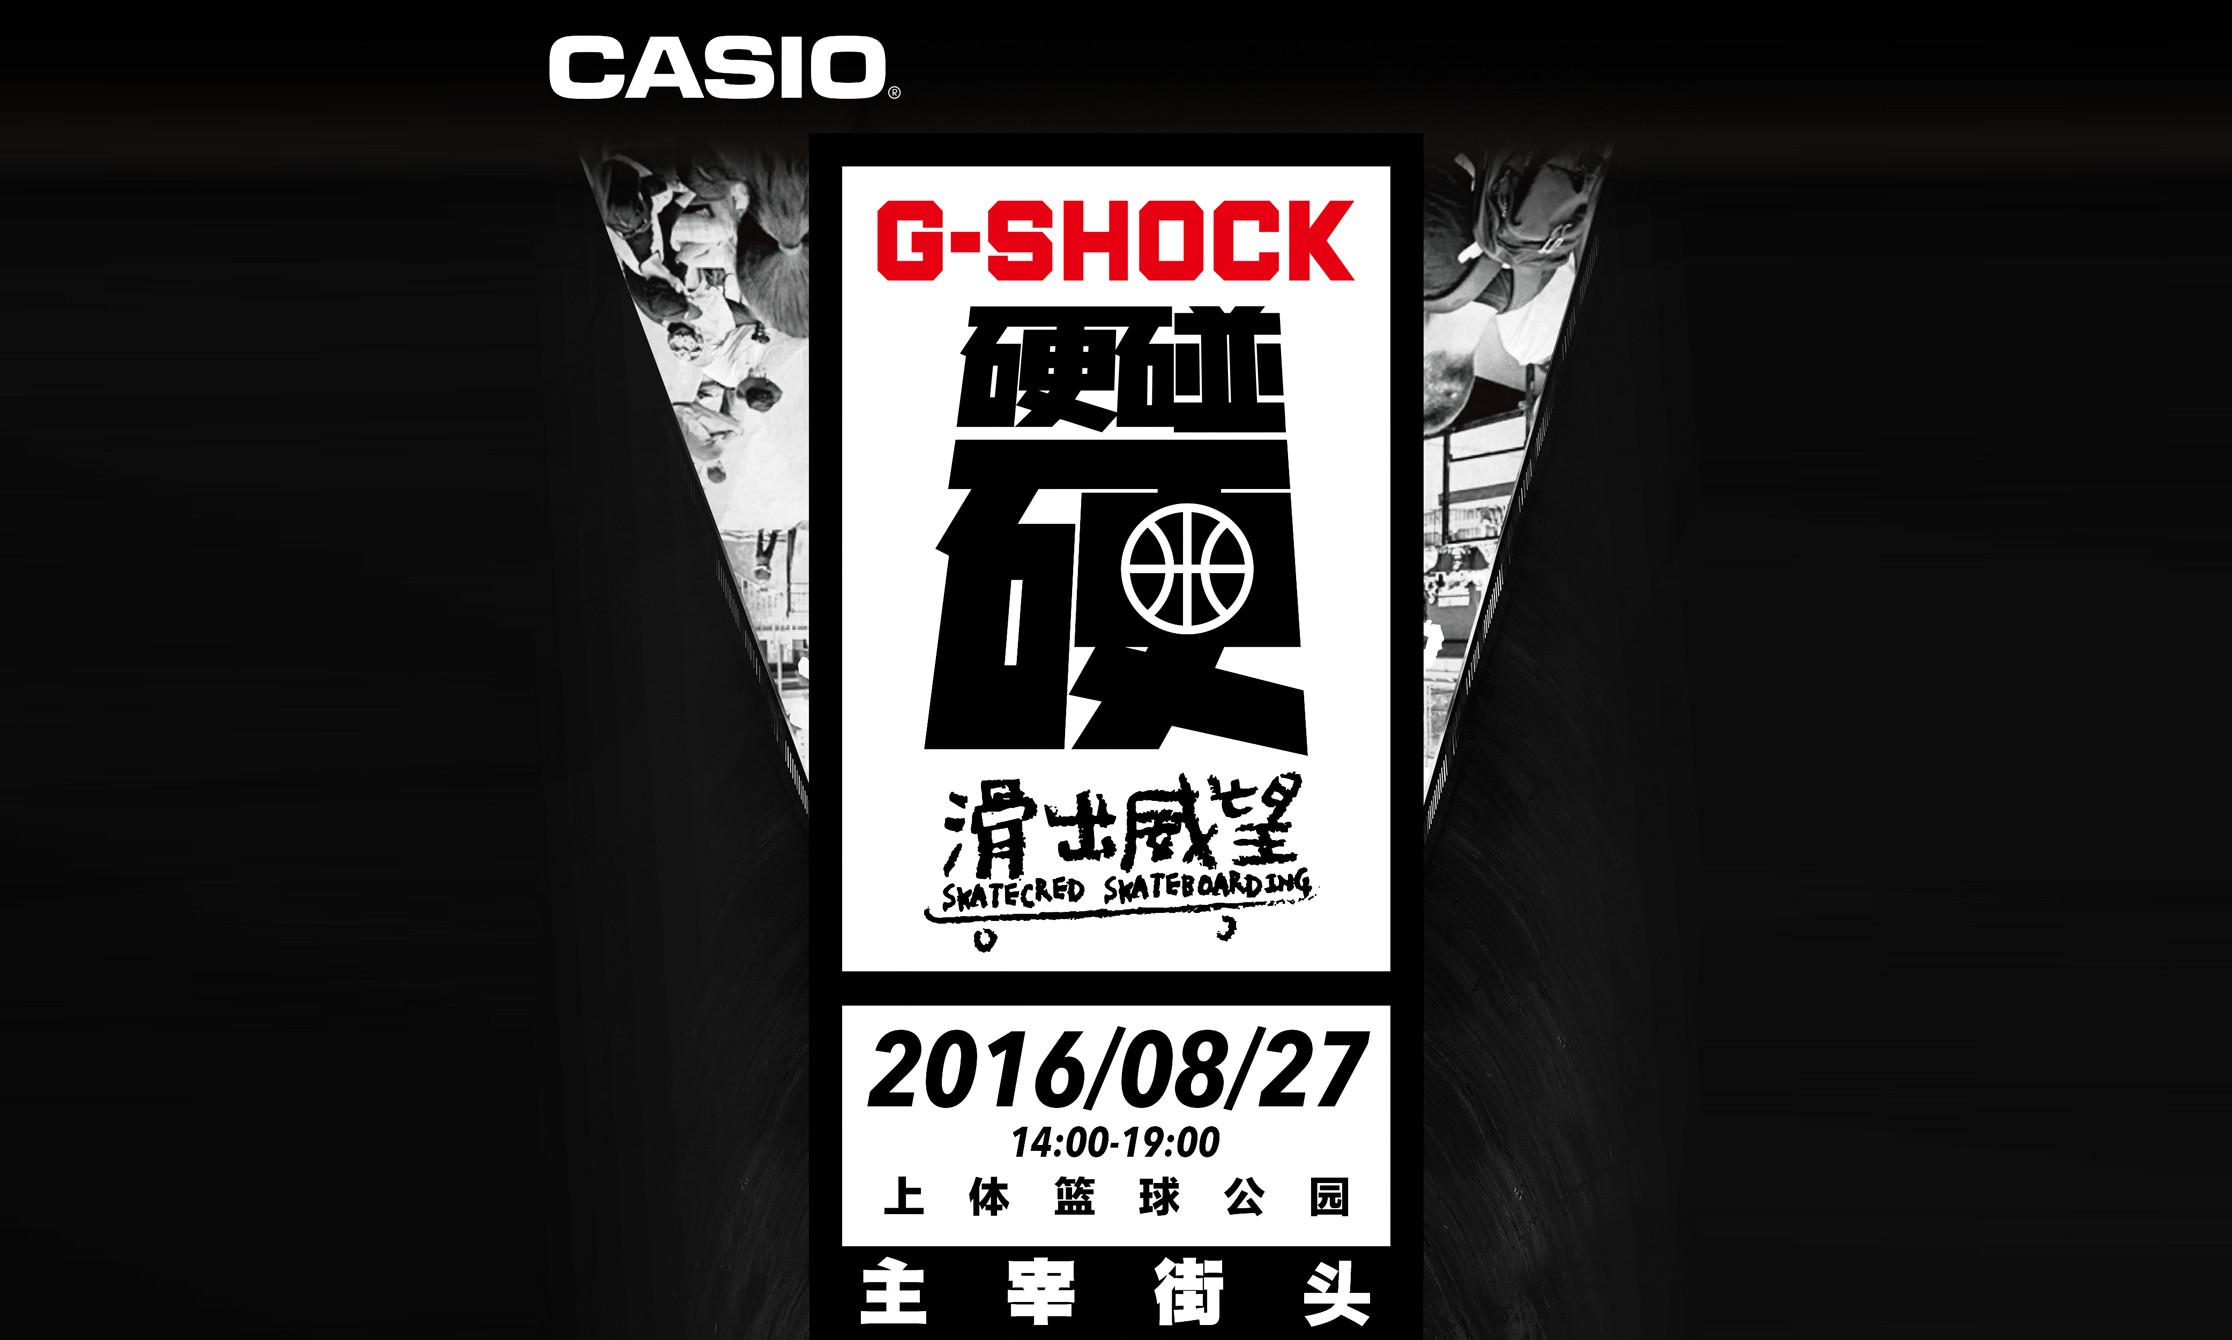 上海 G-SHOCK 滑出威望 CHINA AM 赛事即将开启